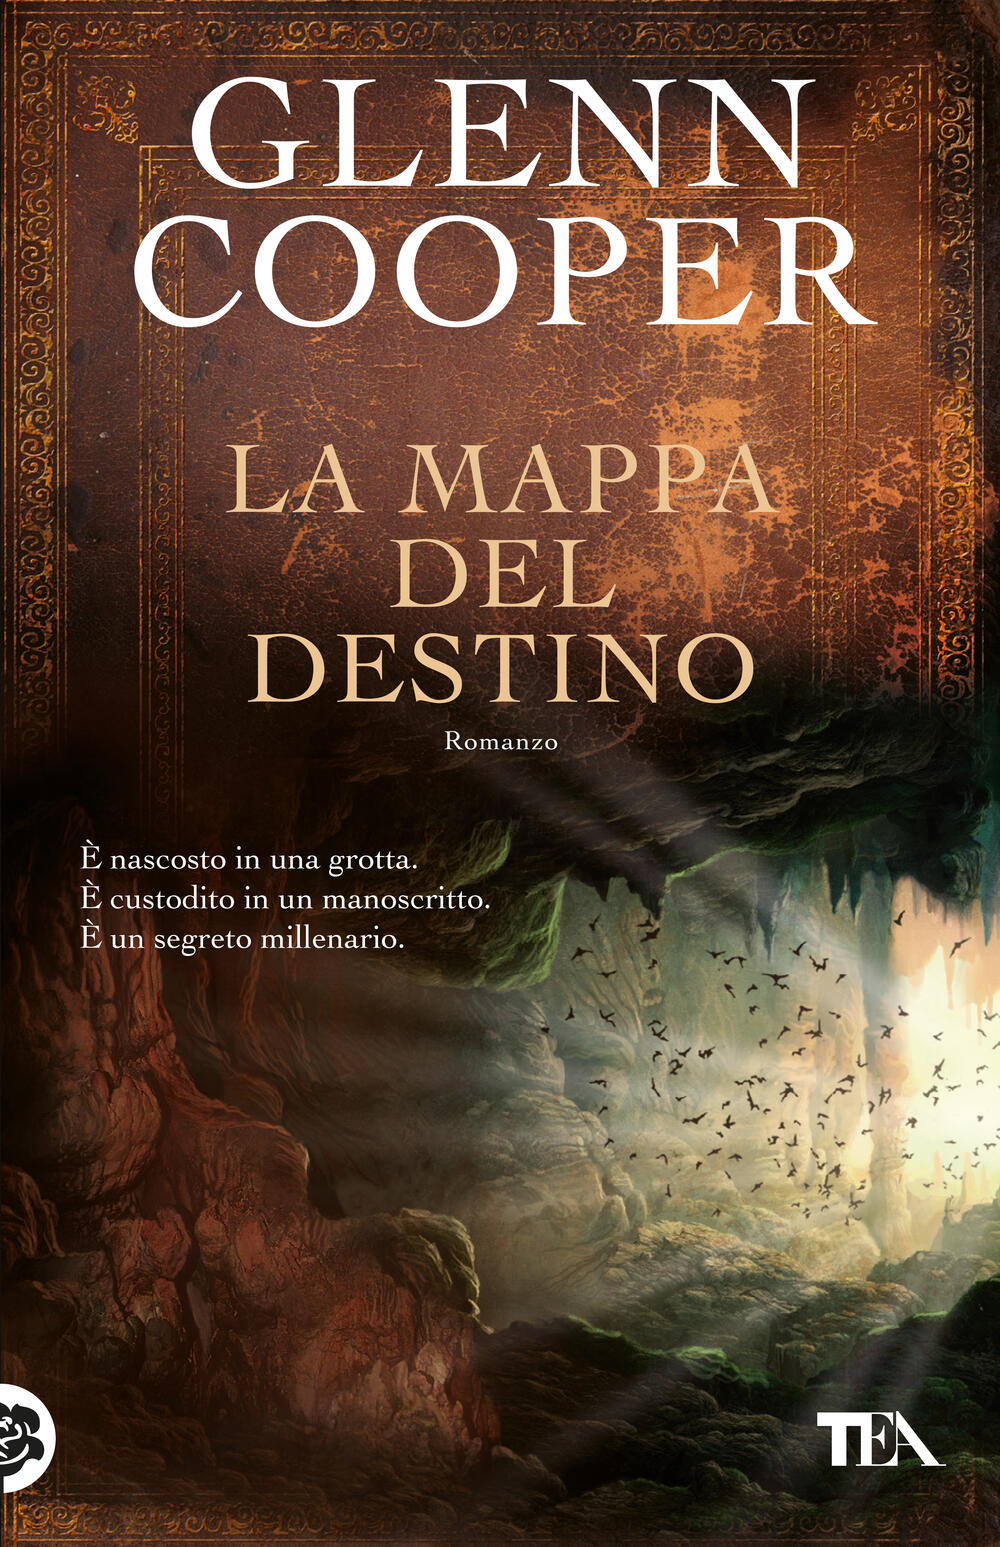 La mappa del destino di Glenn Cooper - Brossura - SuperTEA - Il Libraio